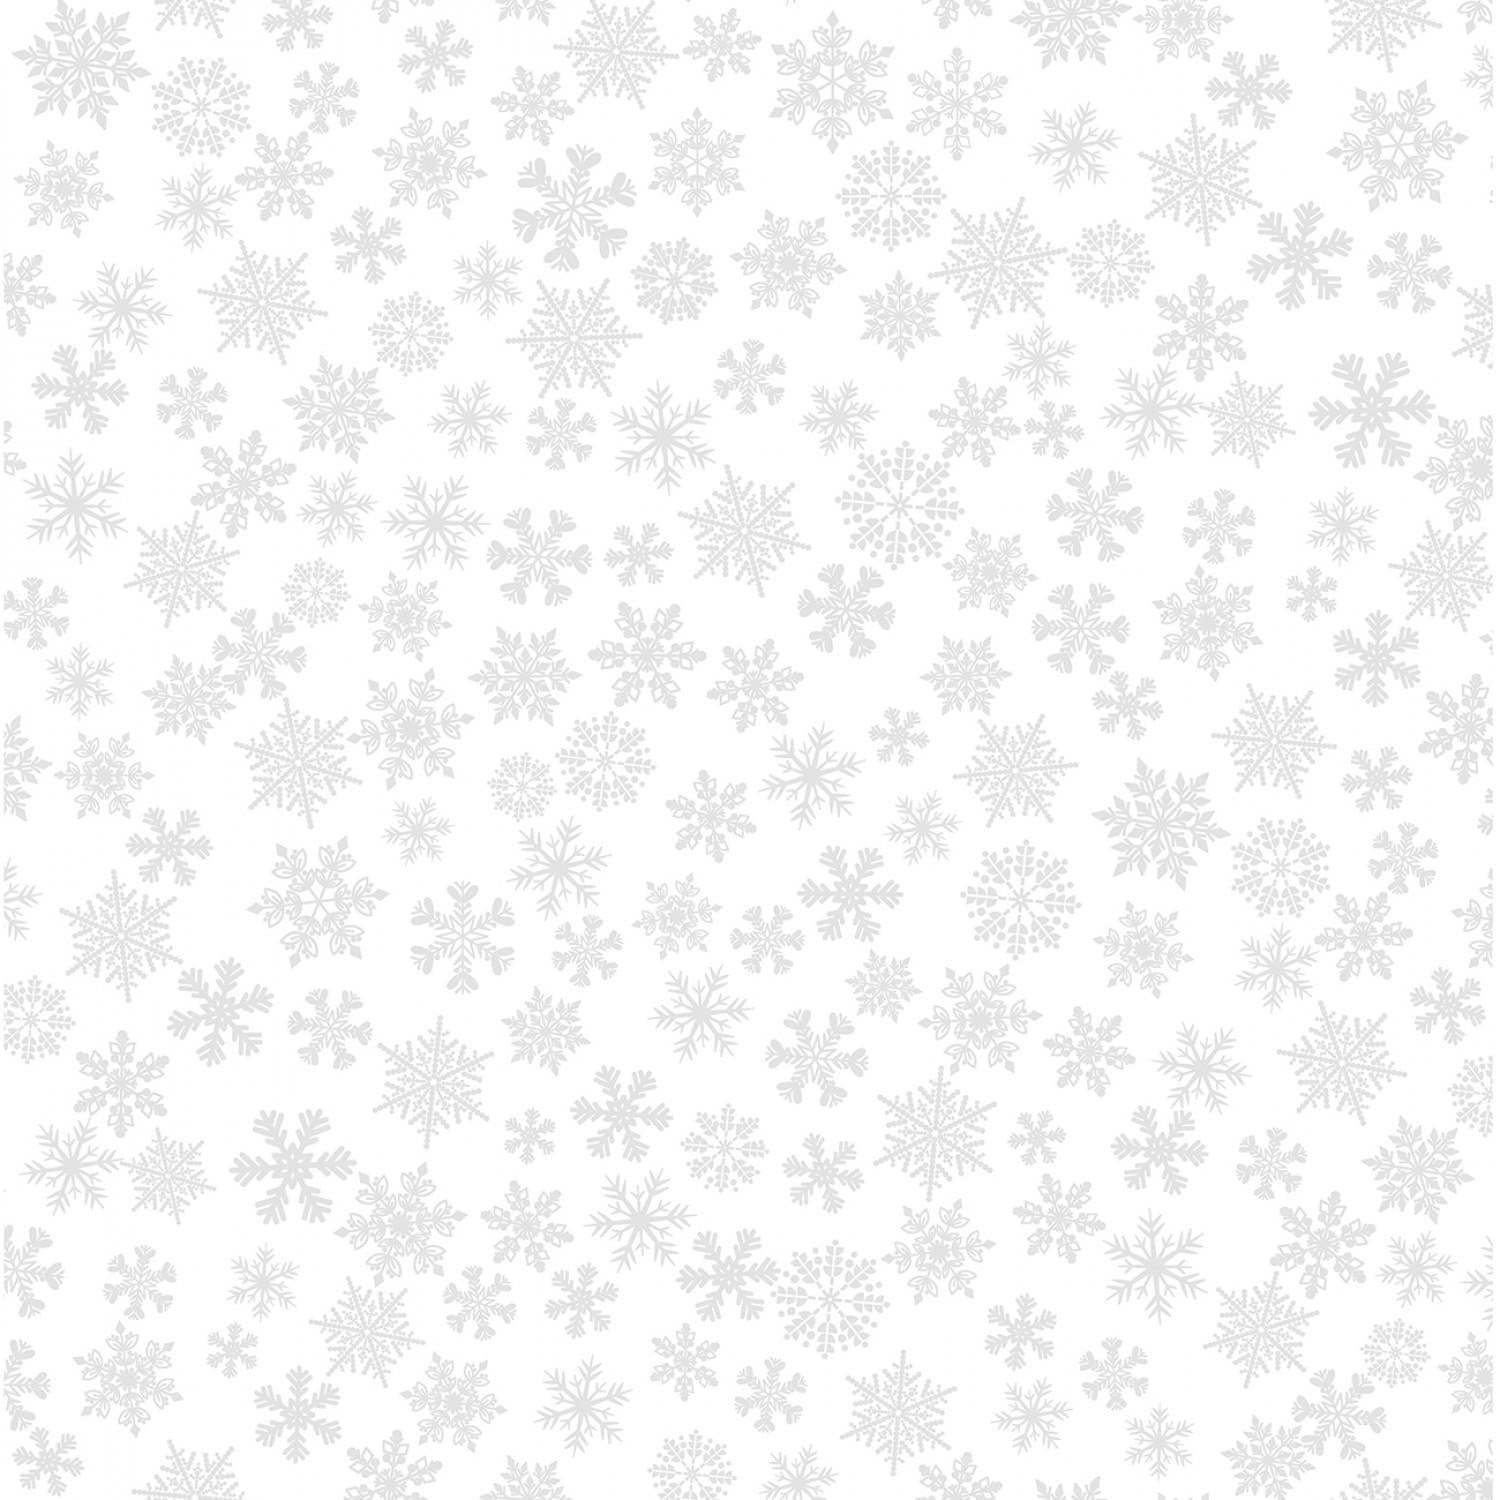 Holiday Snow - Winter Snowflakes - White on White - 14244-09